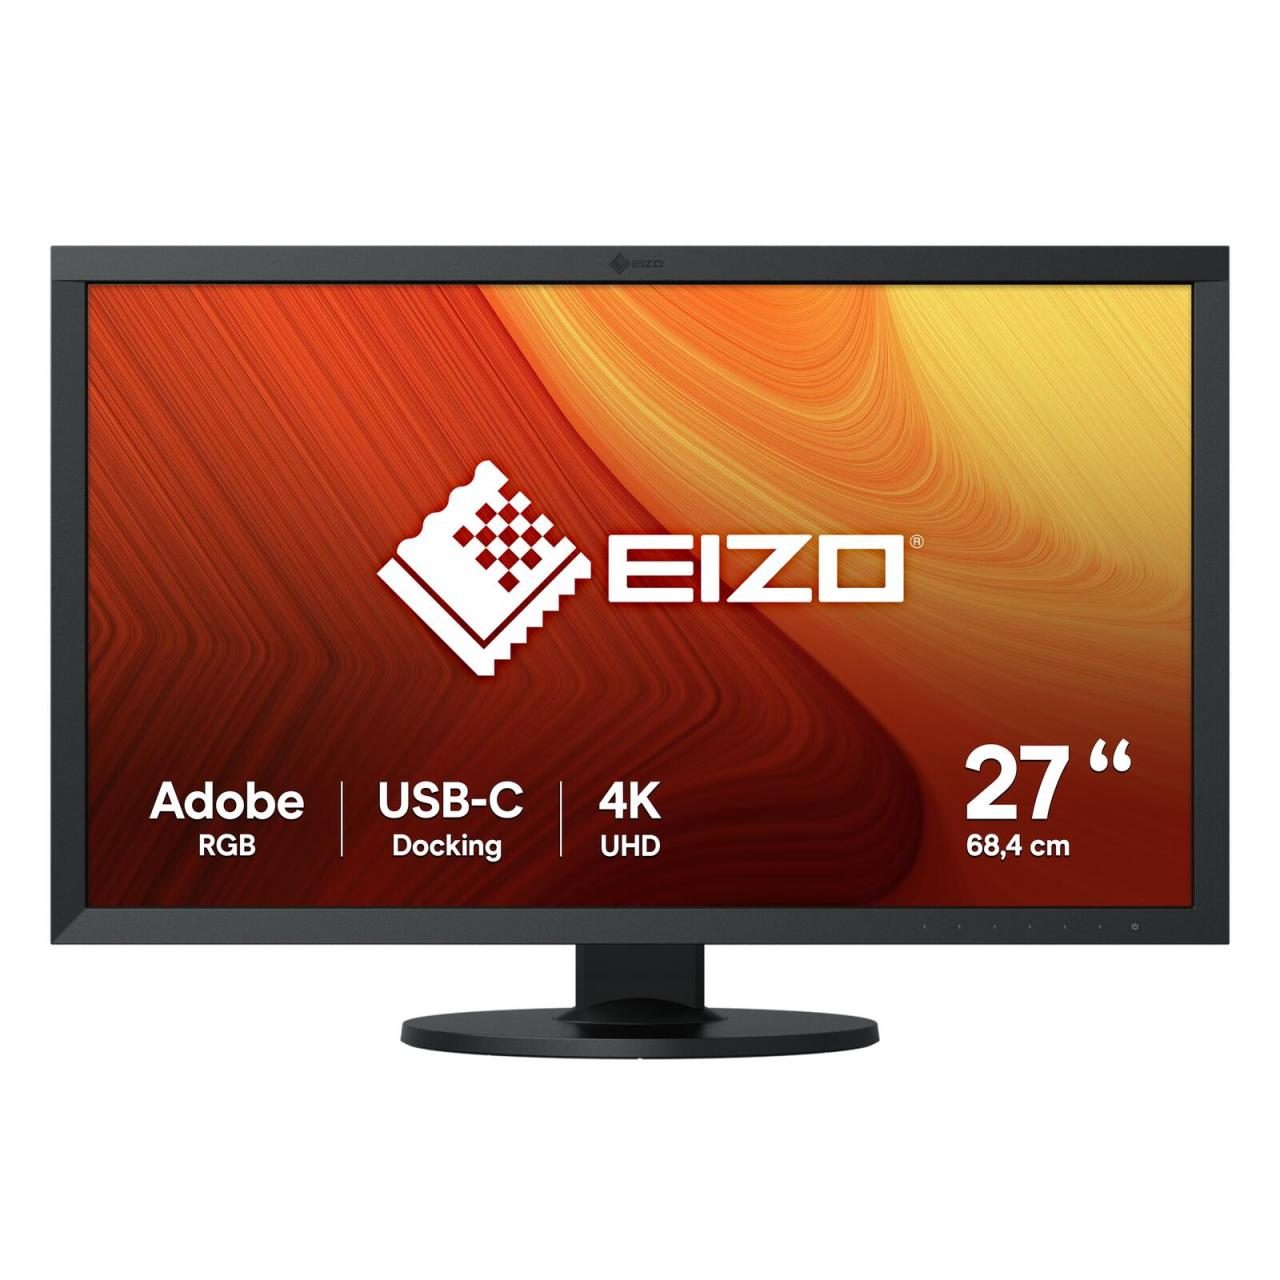 EIZO ColorEdge CS2740 Grafik Monitor 68,4 cm (27 Zoll) von EIZO